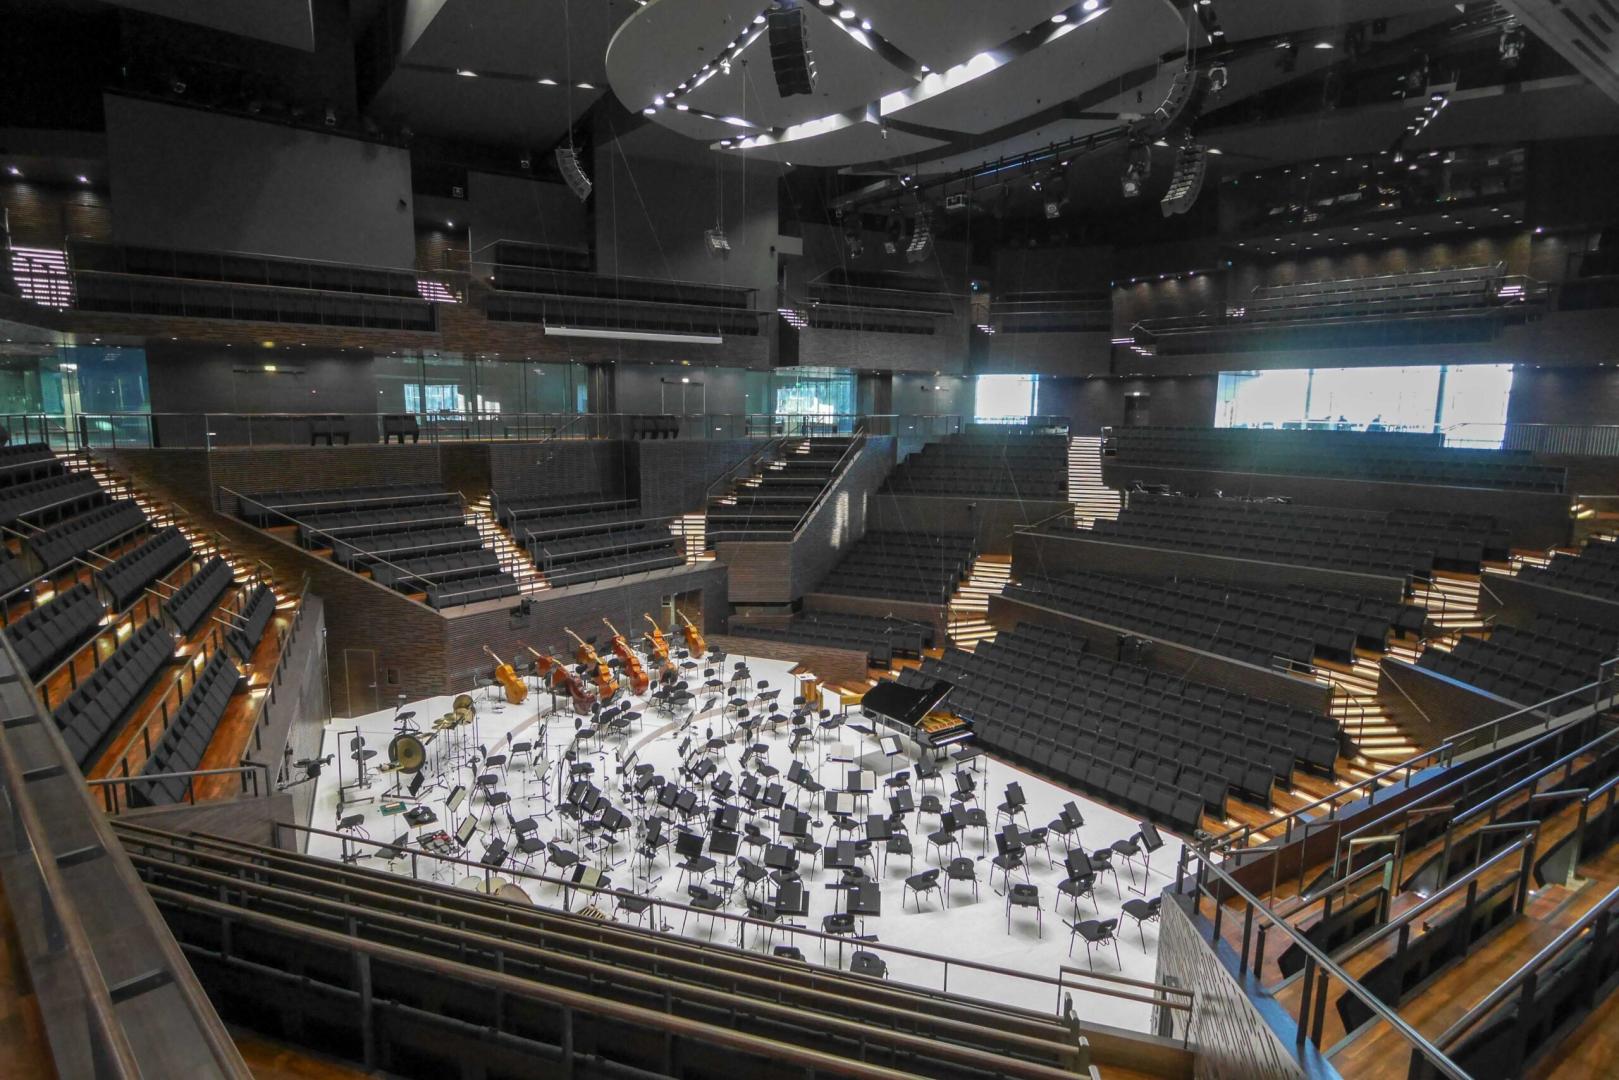 Blick in den leeren Konzertsaal des Helsinki Music Center, die Bühne ist für ein Orchester eingerichtet, die Plätze für Publikum leer.